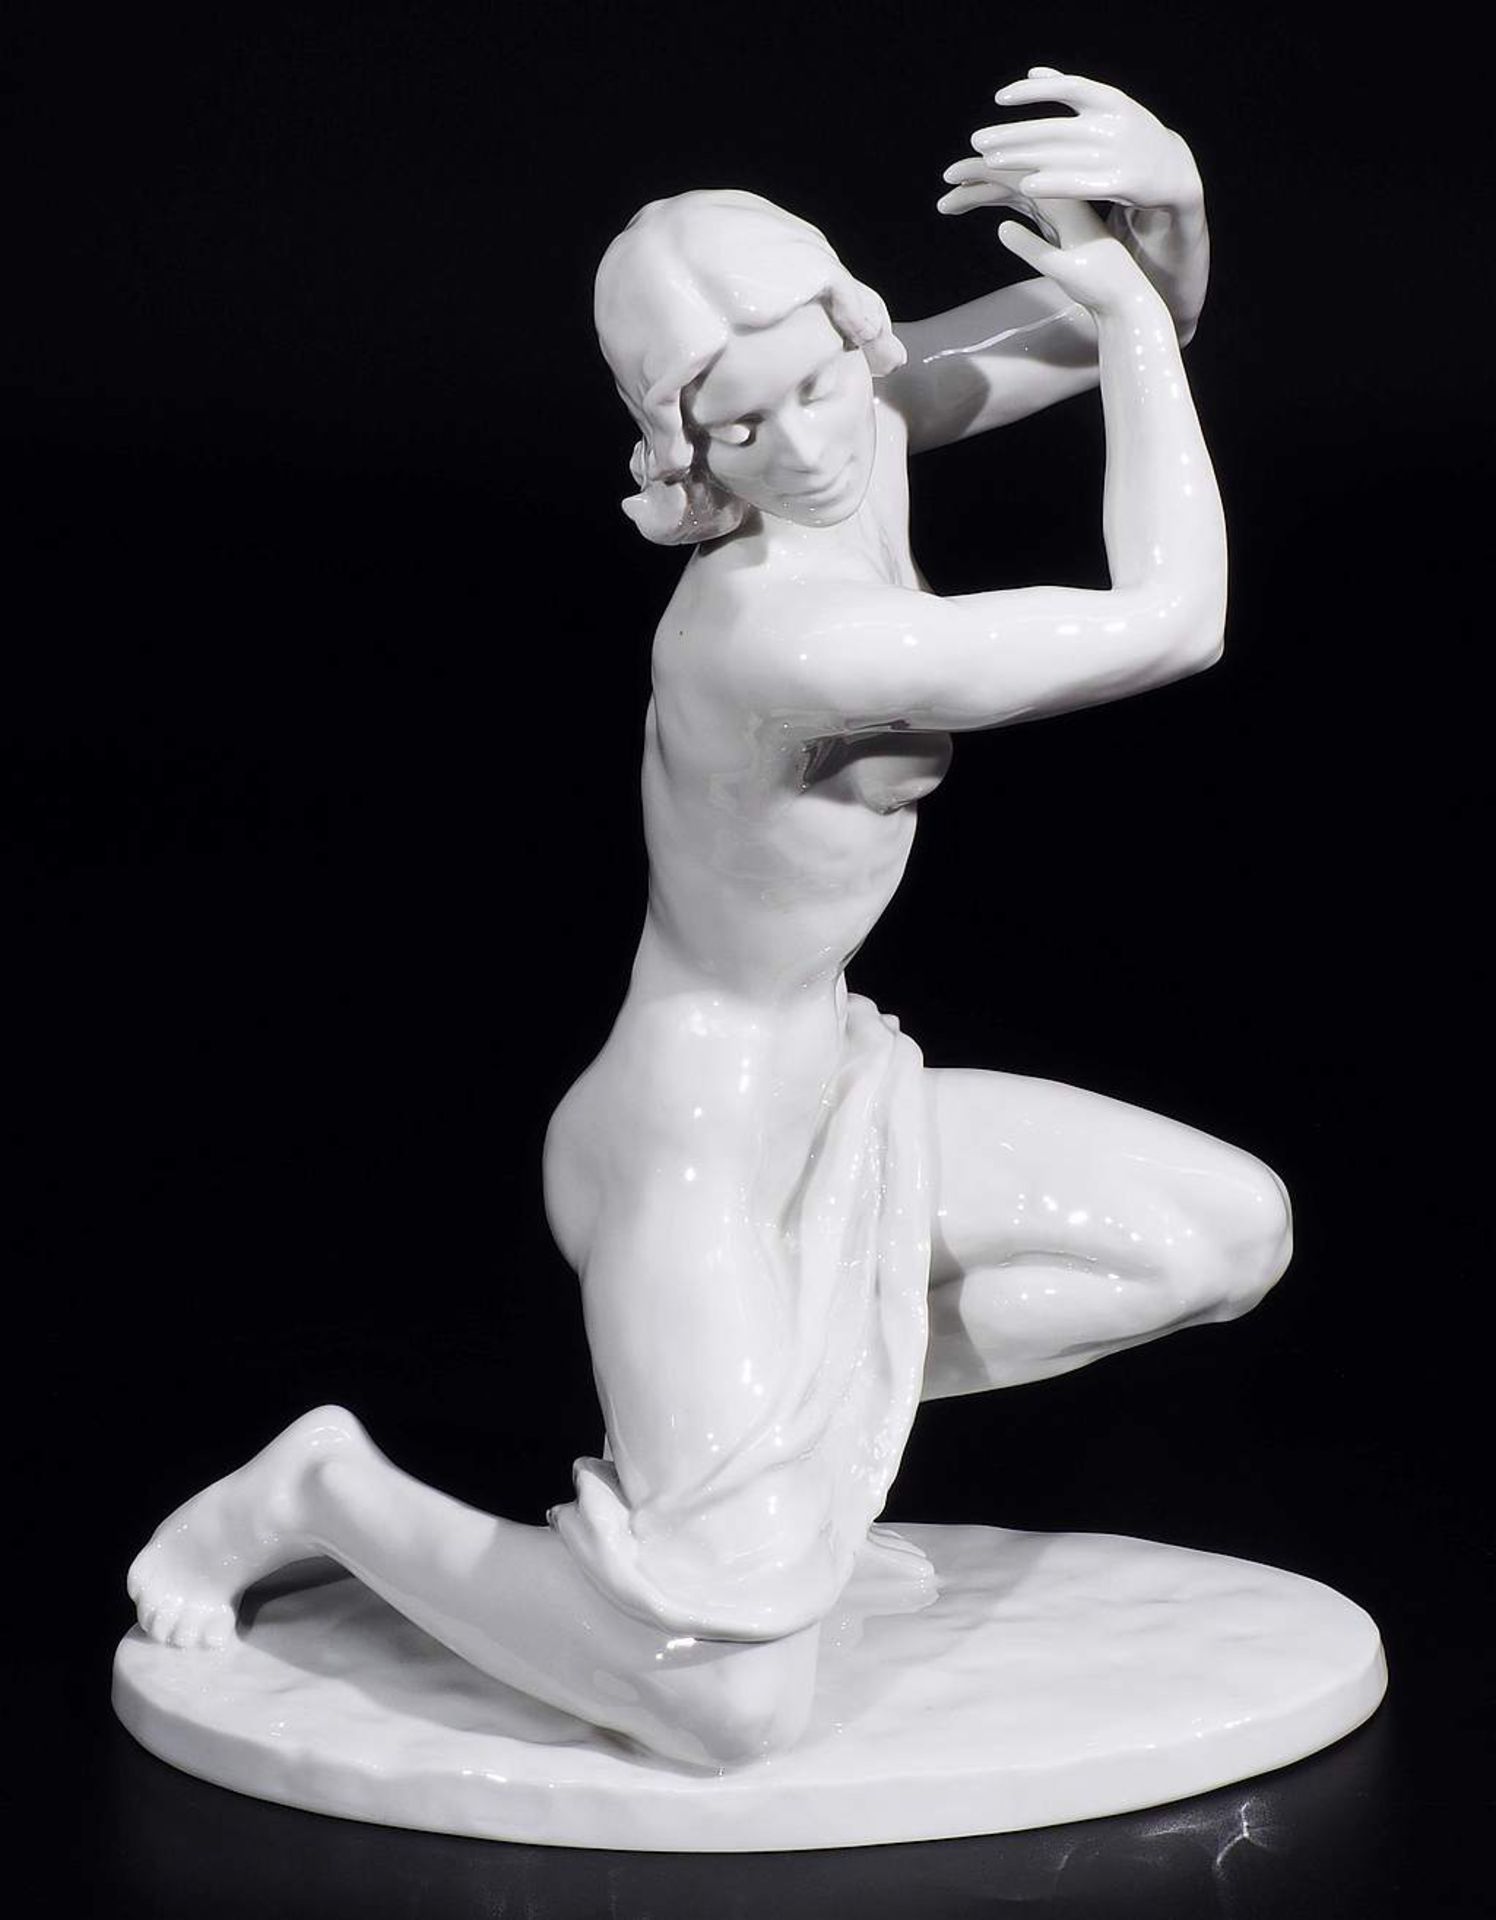 Seltene ROSENTHAL Figurine "LARGO", Ilse Meutner, rechts knieend, auf Ovalsockel. Seltene - Bild 2 aus 9